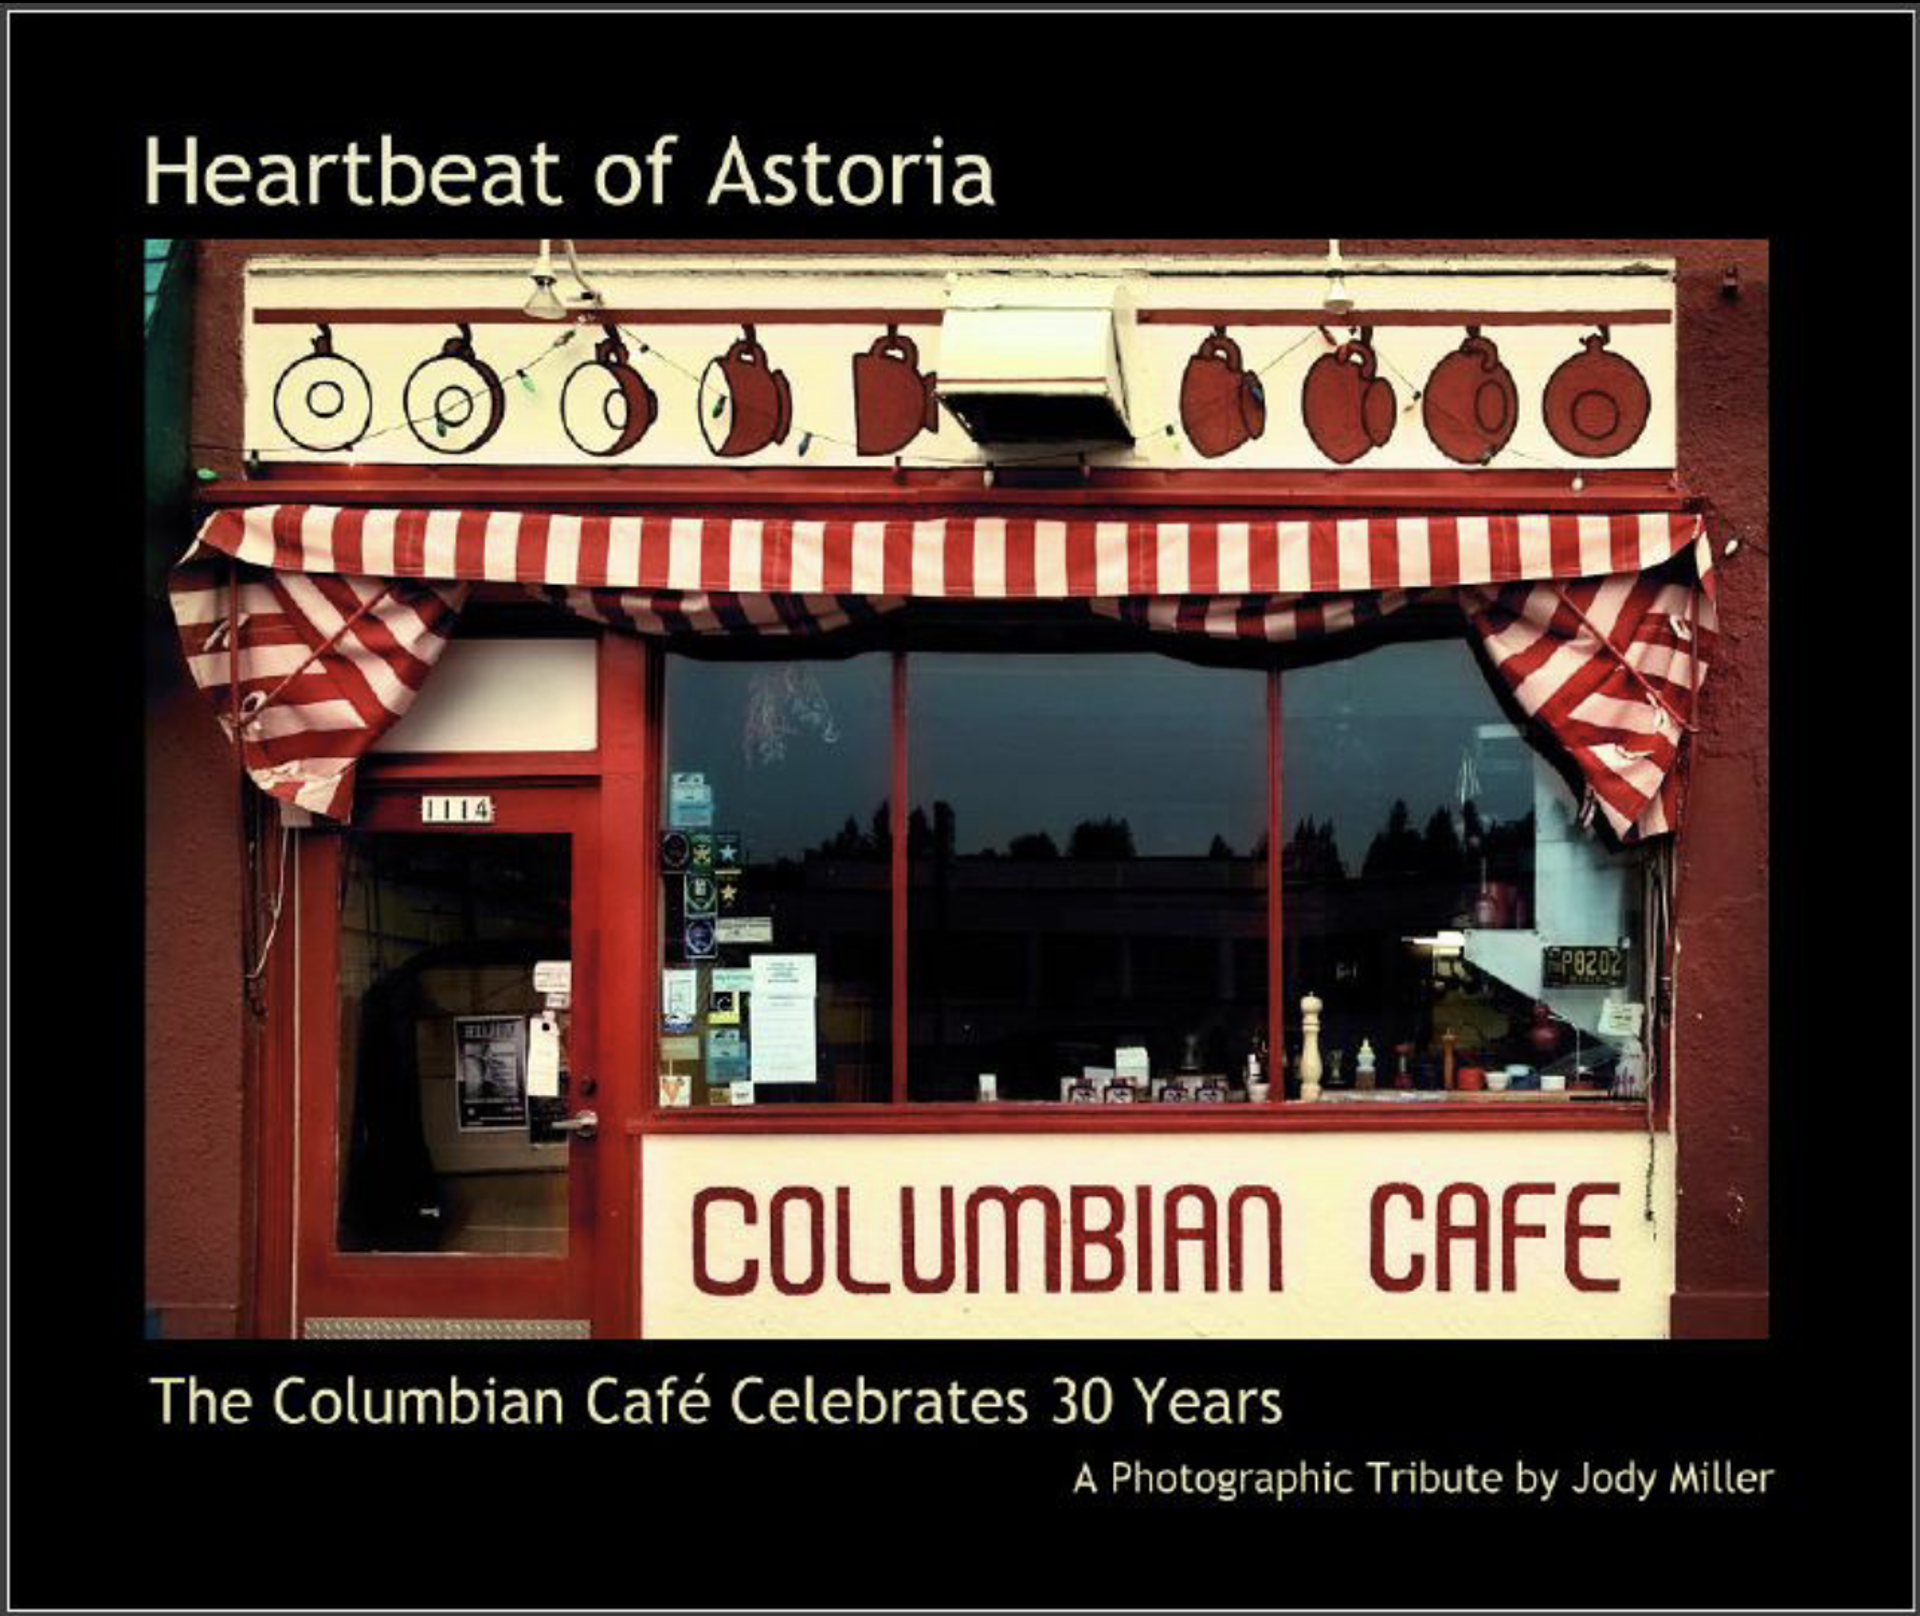 Heartbeat of Astoria by Jody Miller